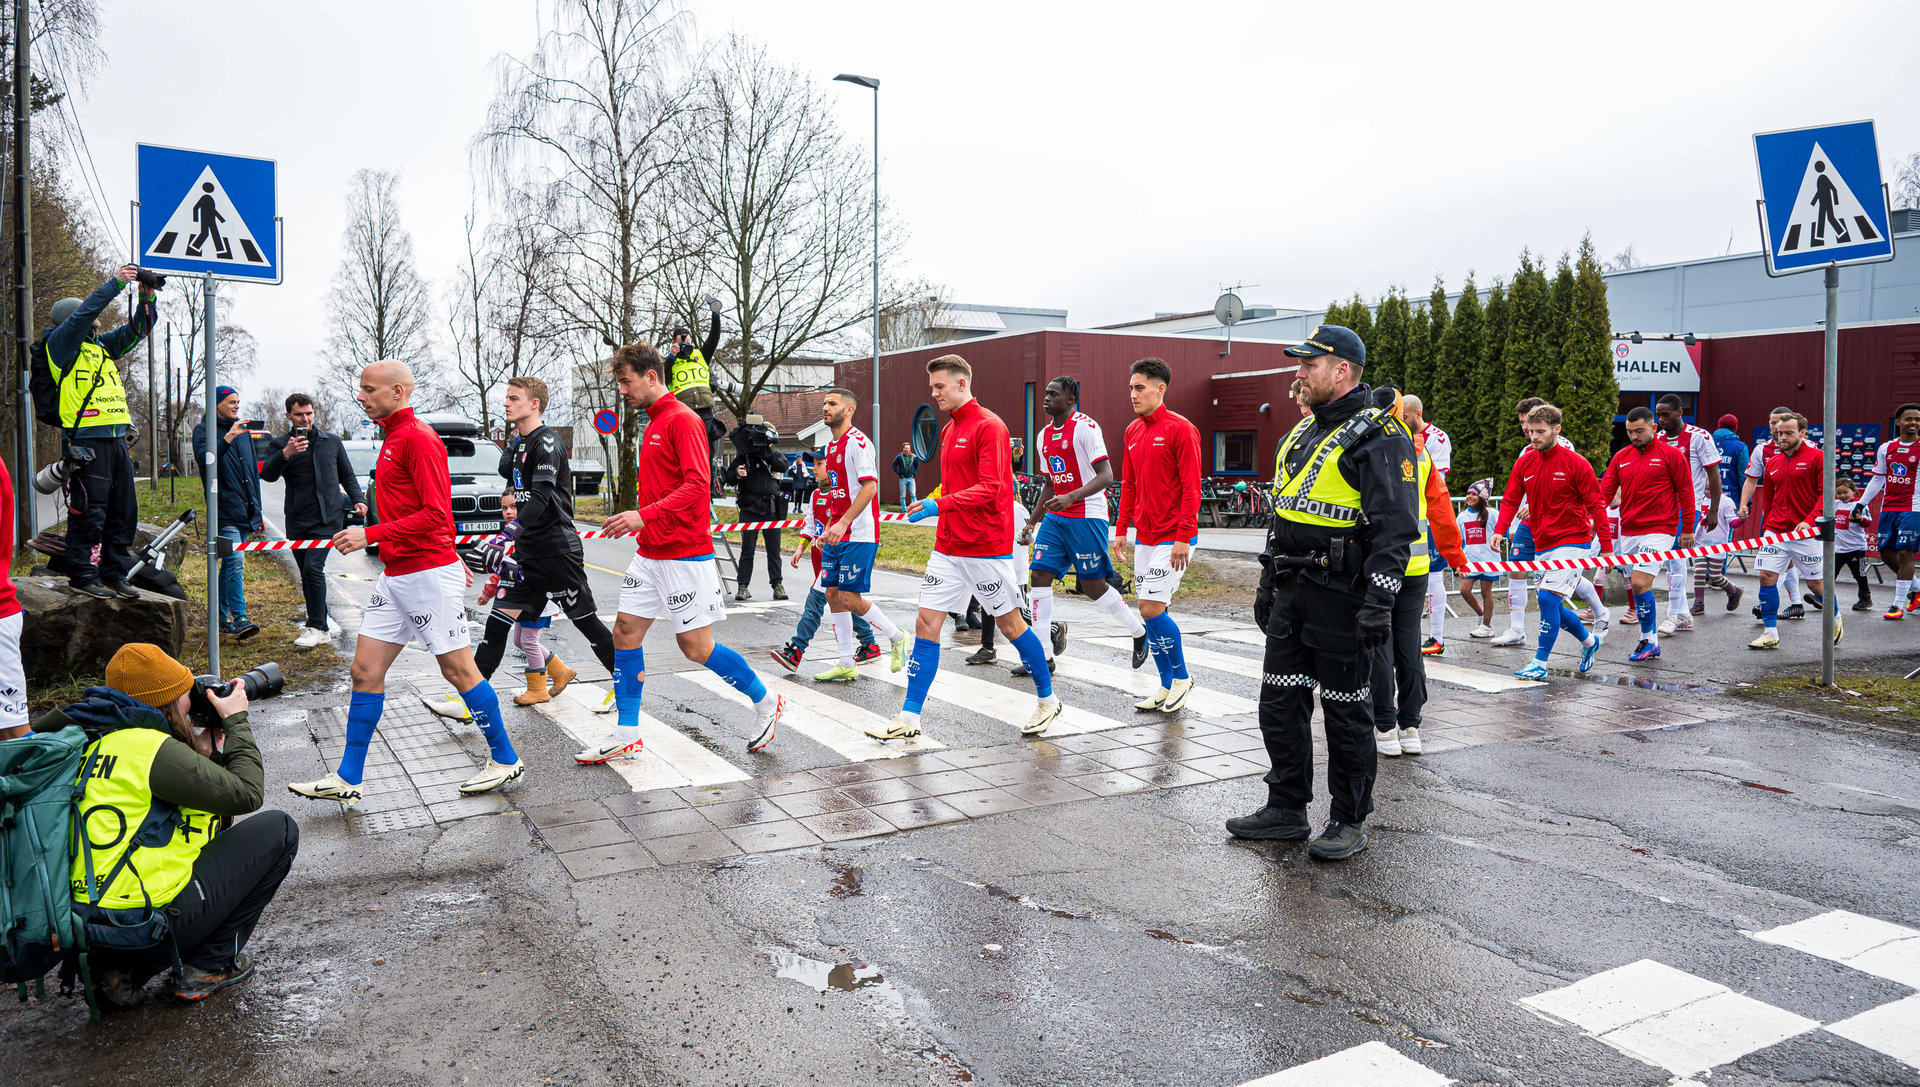 Futbalisti KFUM Oslo prichádzajú na štadión. Zdroj: Imago